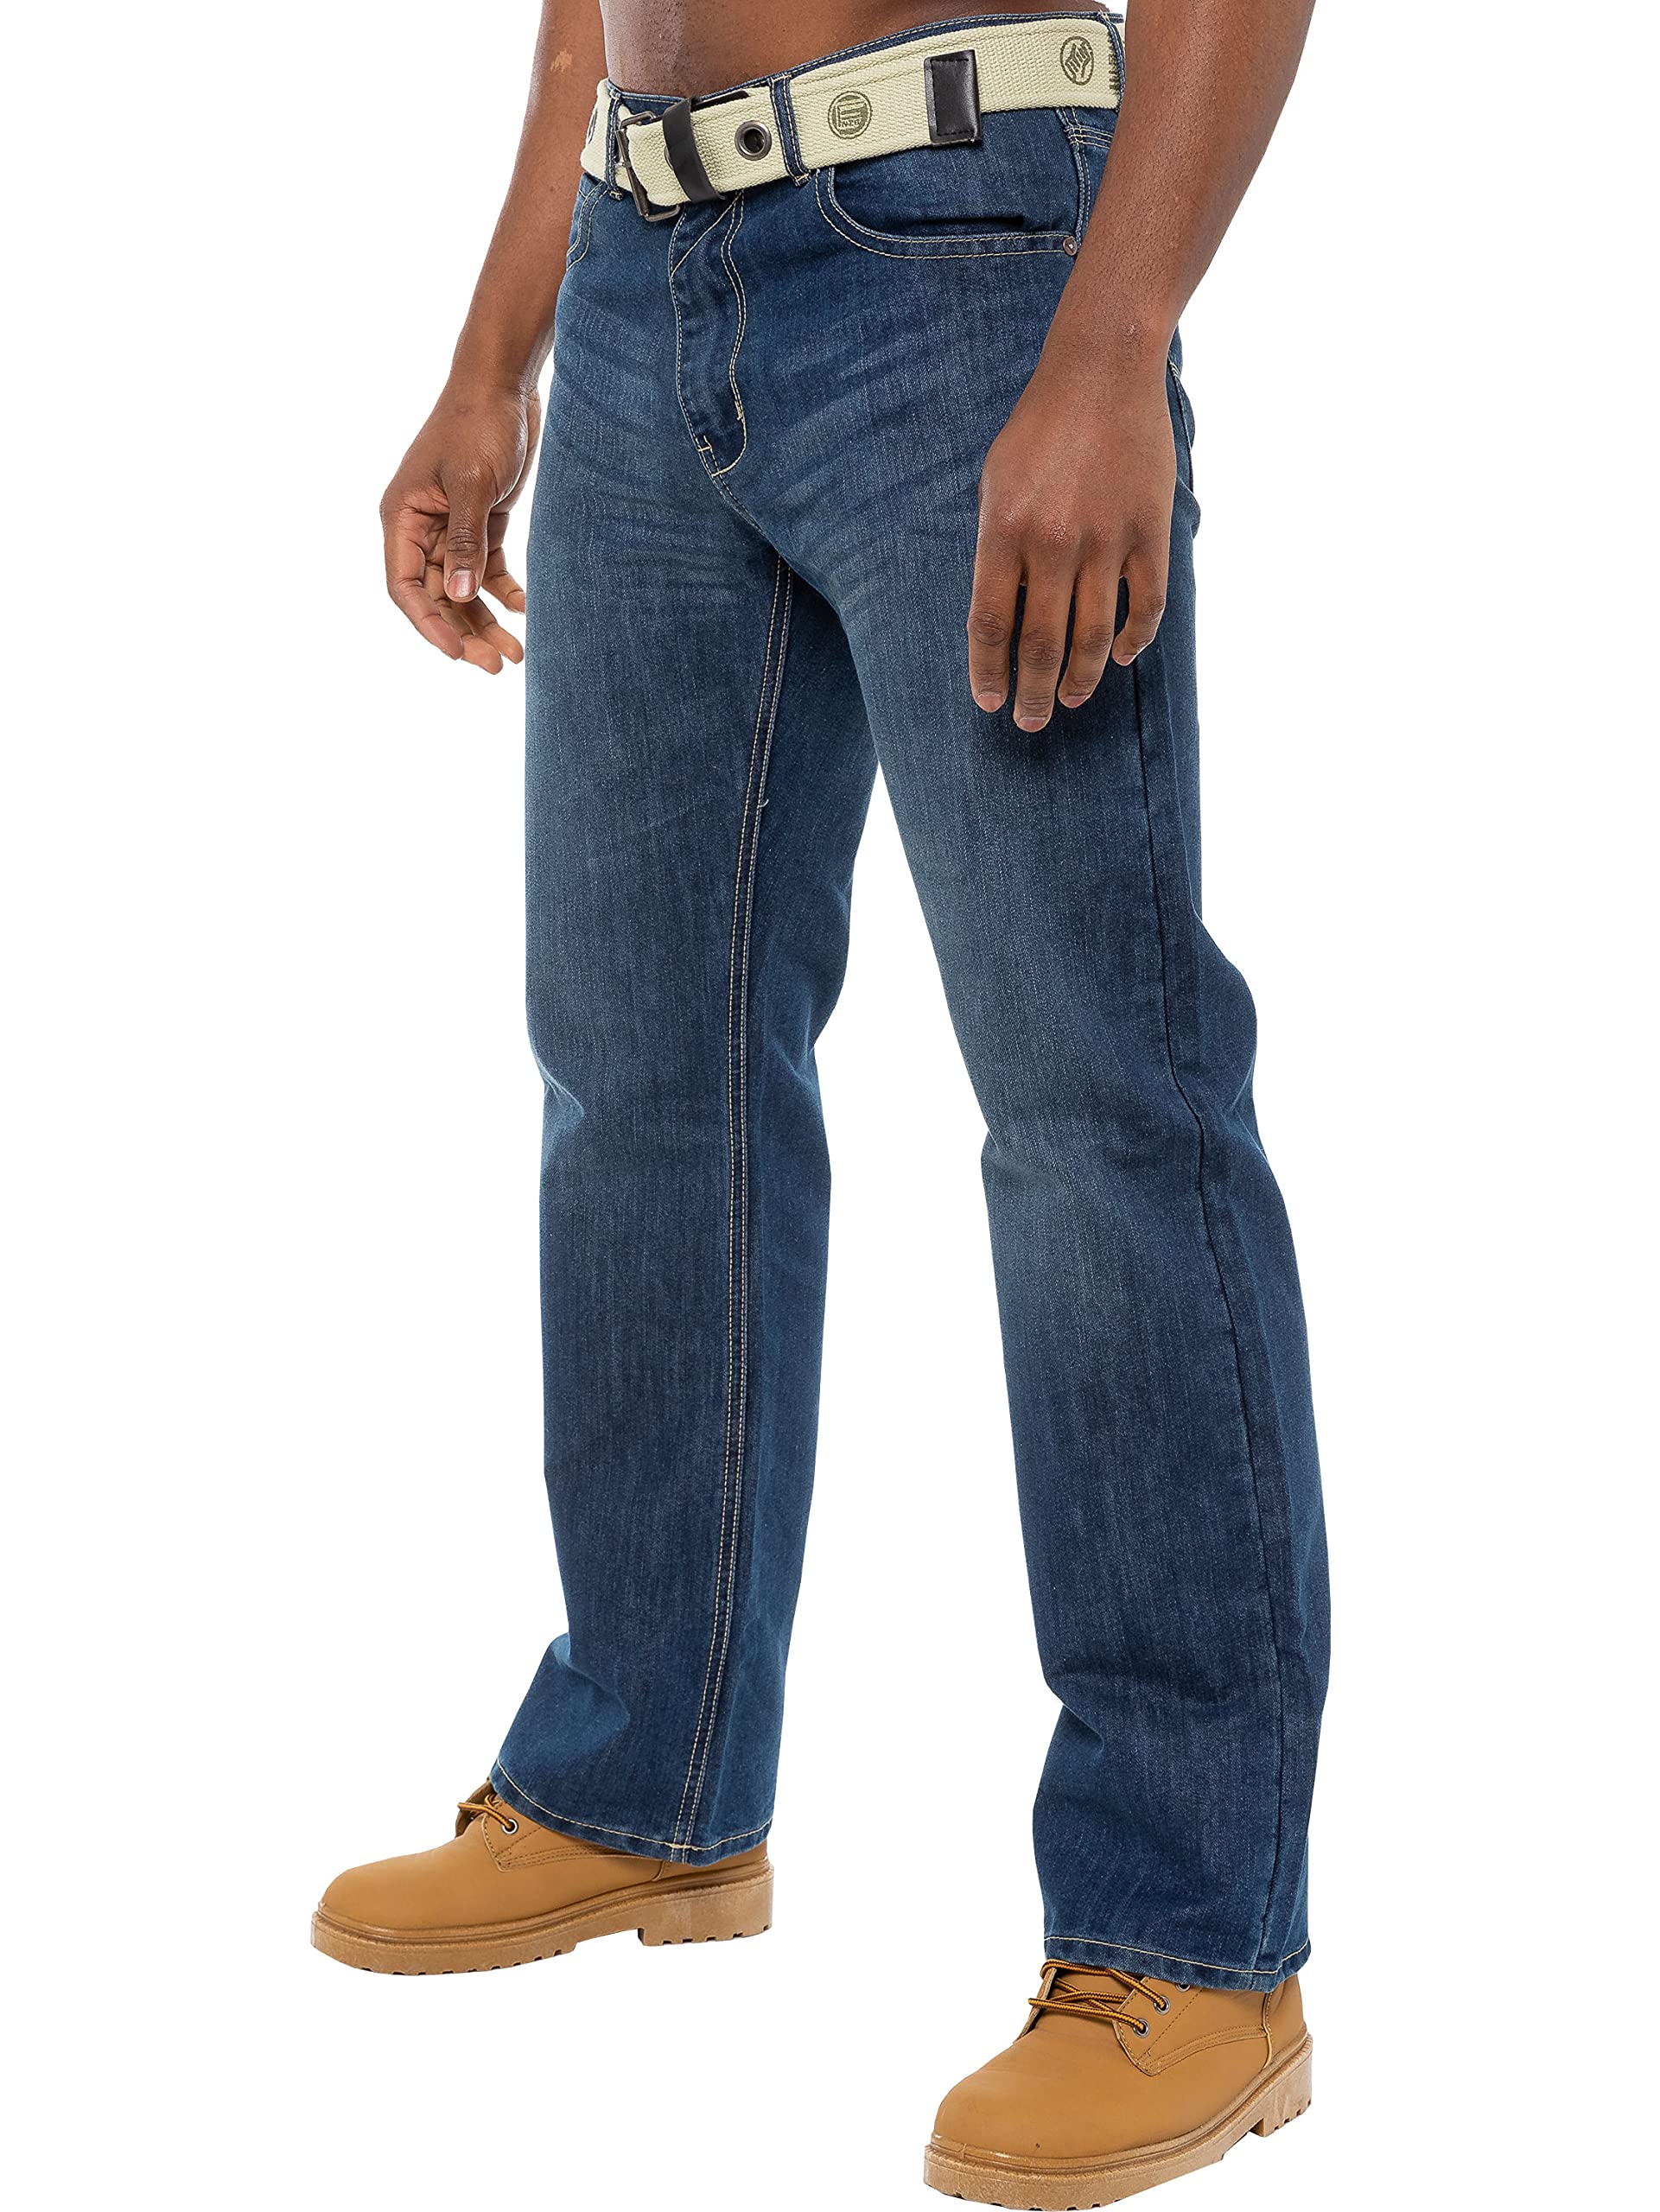 Enzo Herren-Jeans mit geradem Bein, normale Passform, Denim-Hose, Reißverschluss, fliegenfreier Gürtel, Stone-Wash, 30 W/32 L